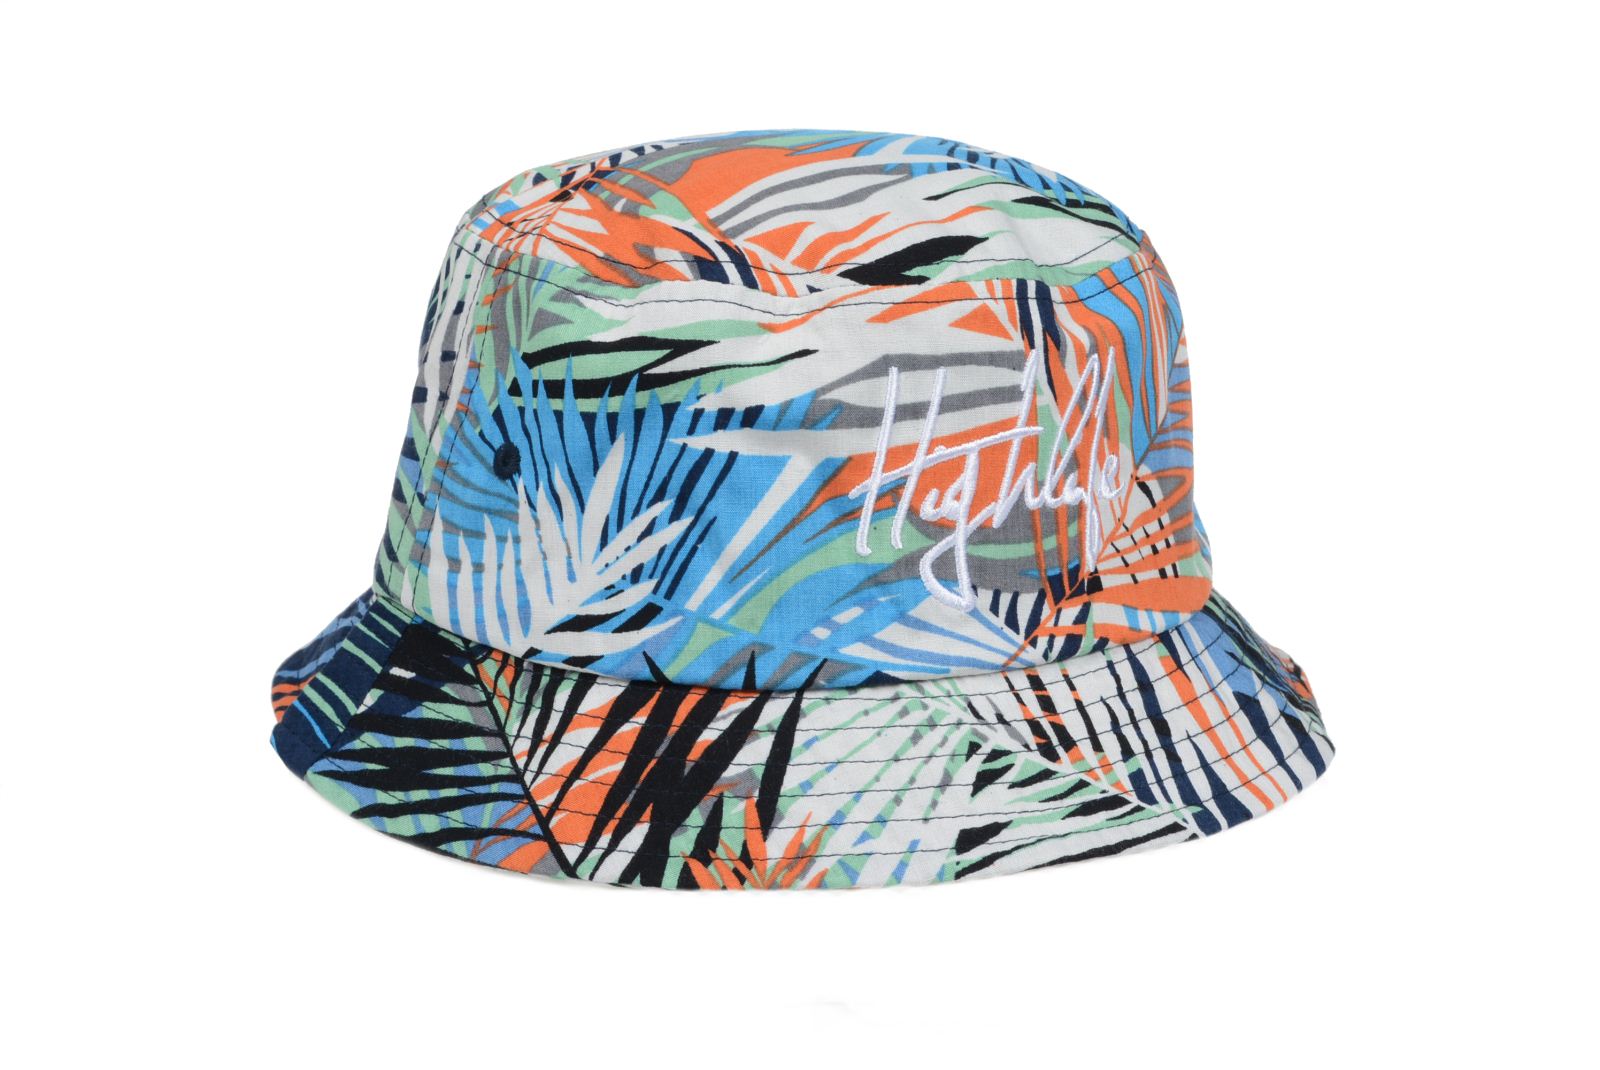 2014款夏威夷风格沙滩帽